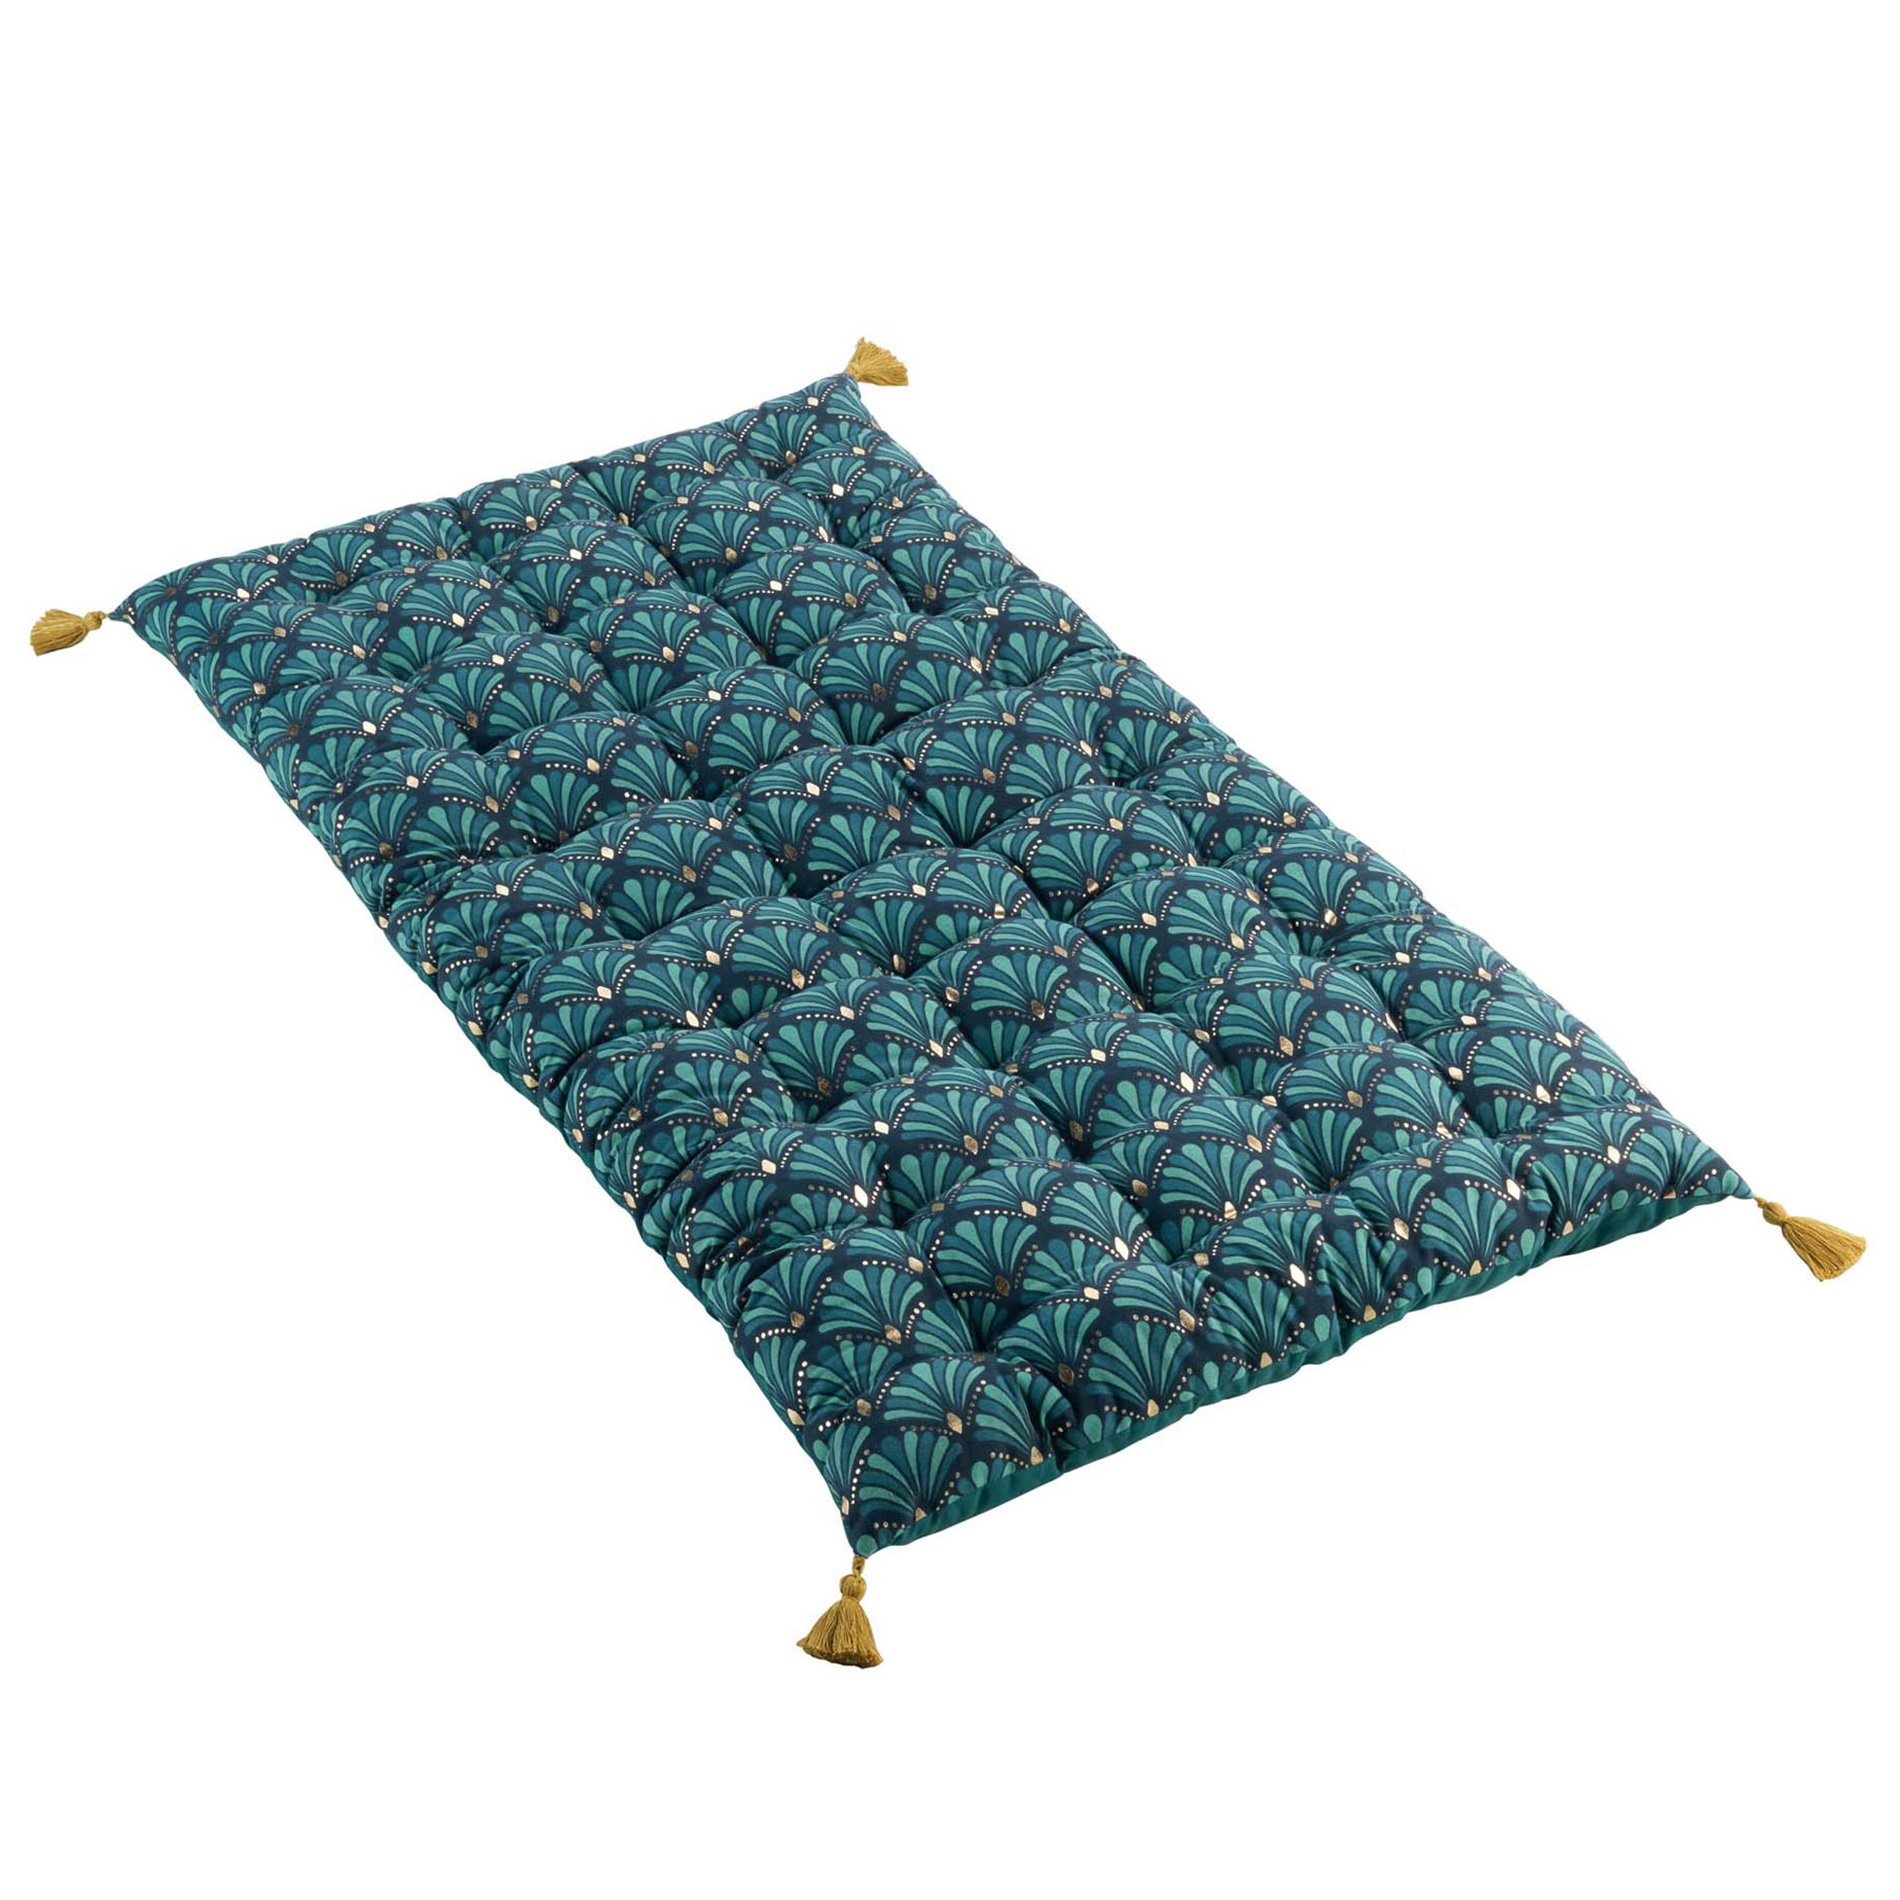 Kit coussins palette (L120 cm) Pixel Bleu marine - Déco textile - Eminza